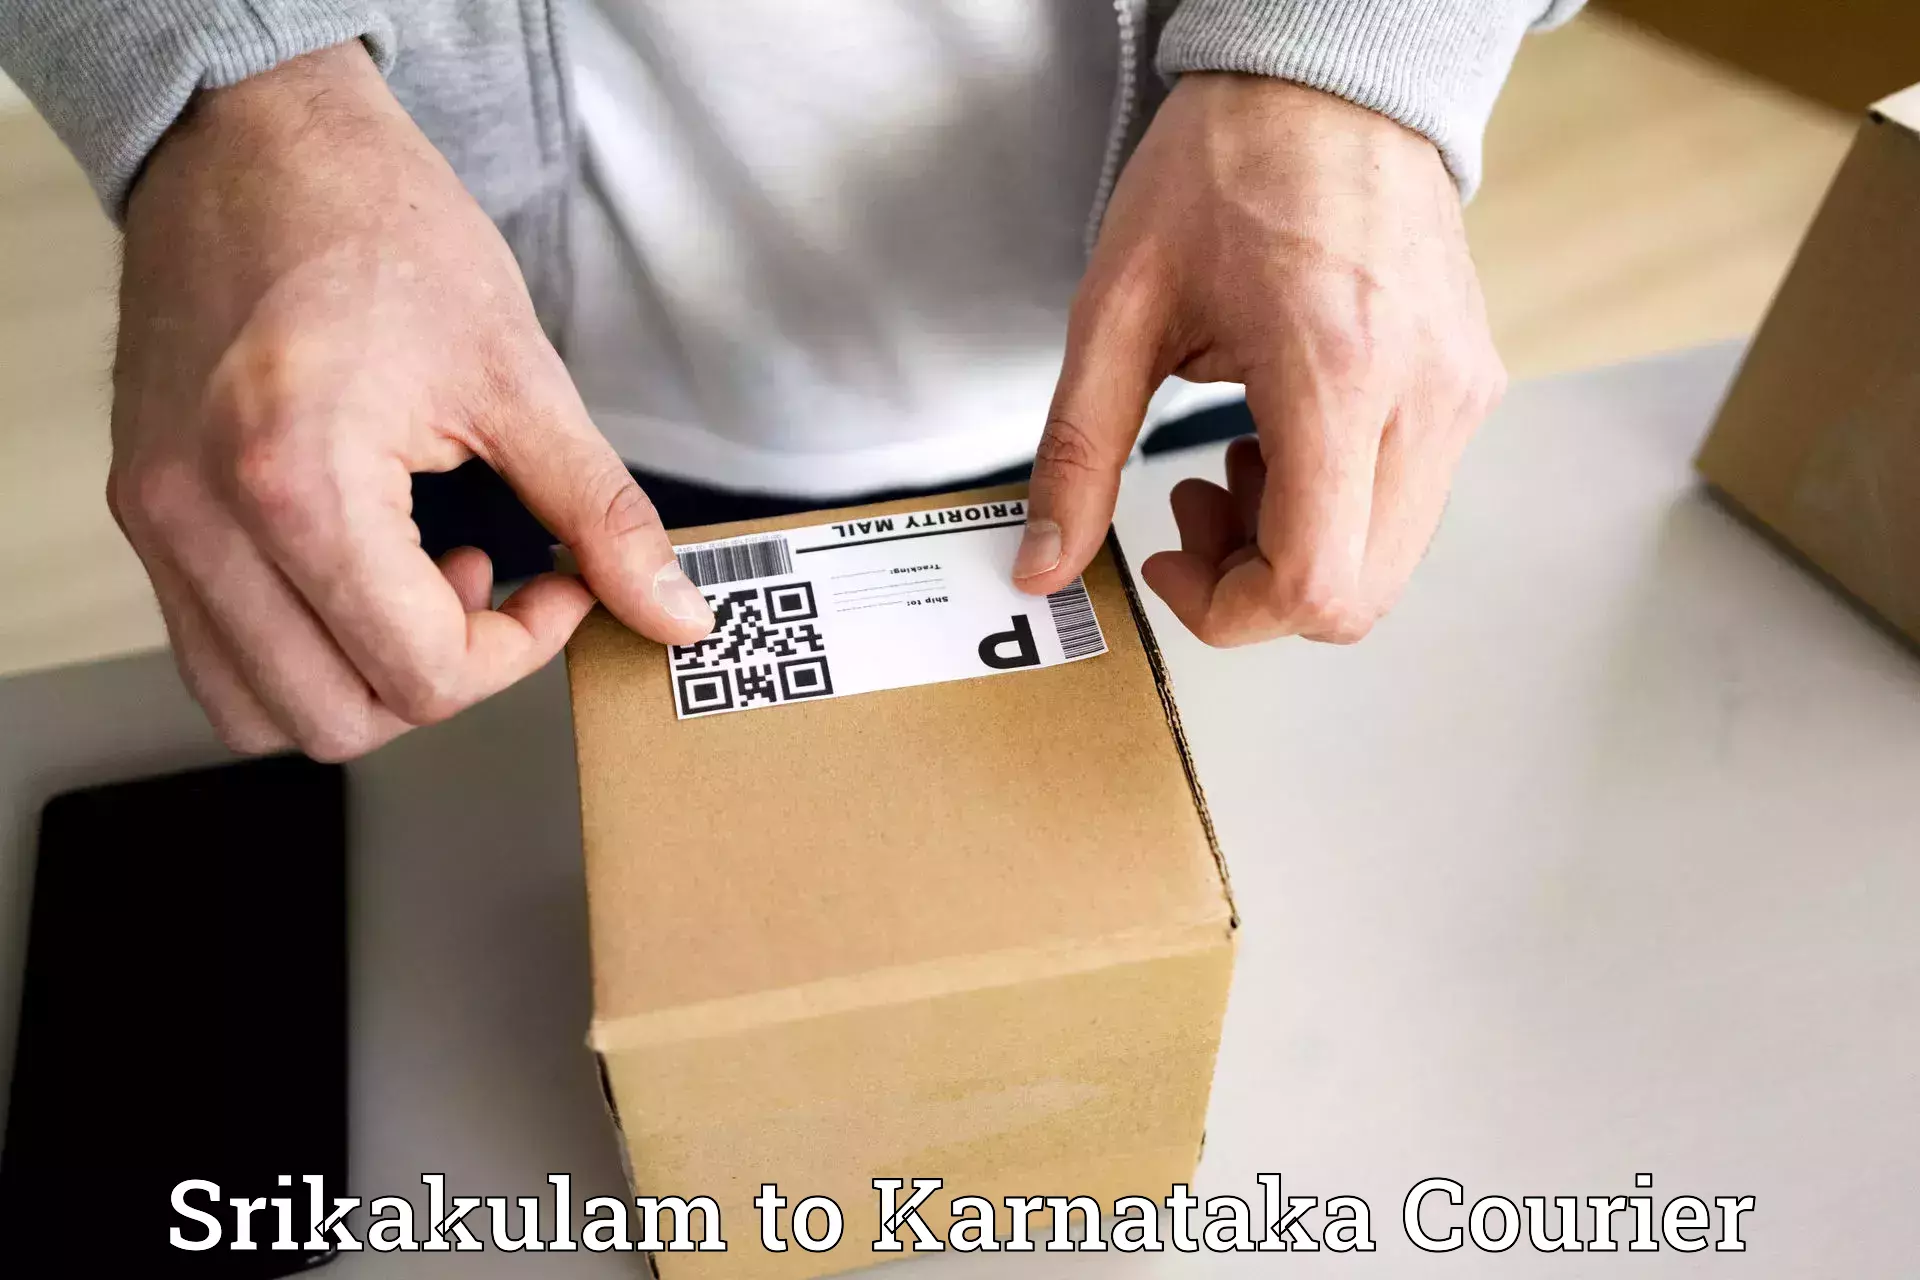 Reliable logistics providers Srikakulam to Tarikere